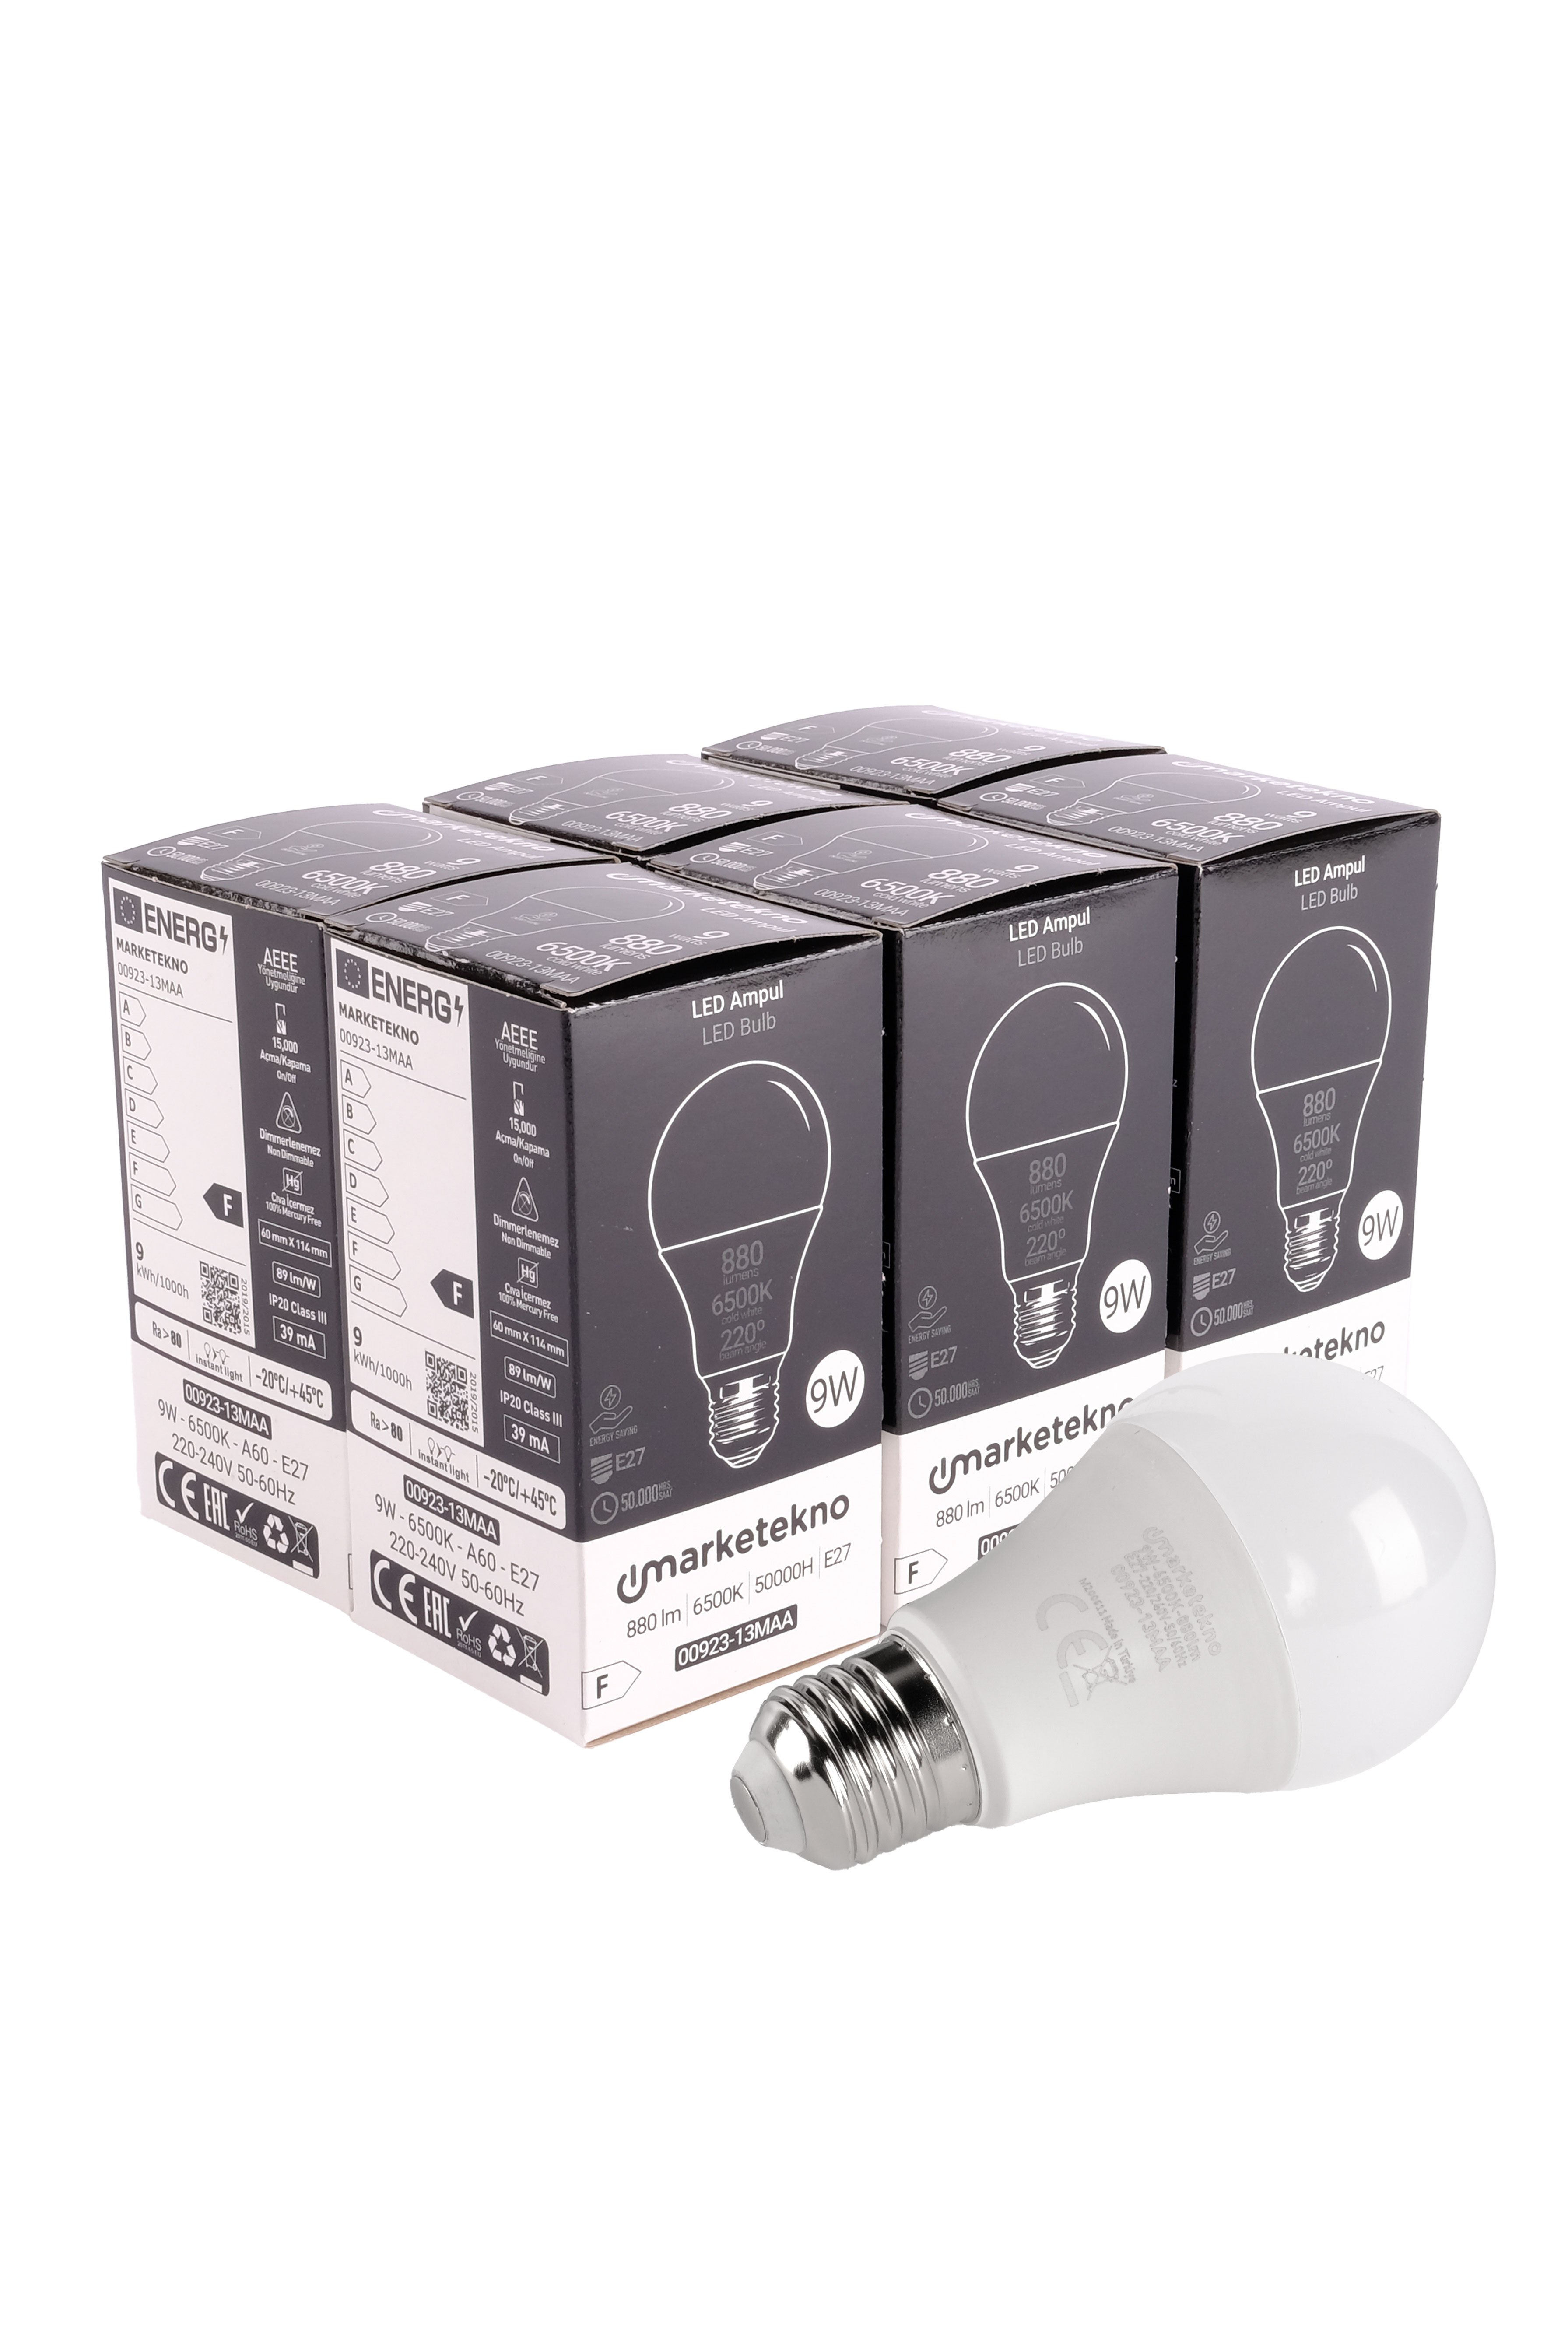 Marketekno 9W LED Ampul 6500K Beyaz Işık A60 E27 6'lı Paket Ampul